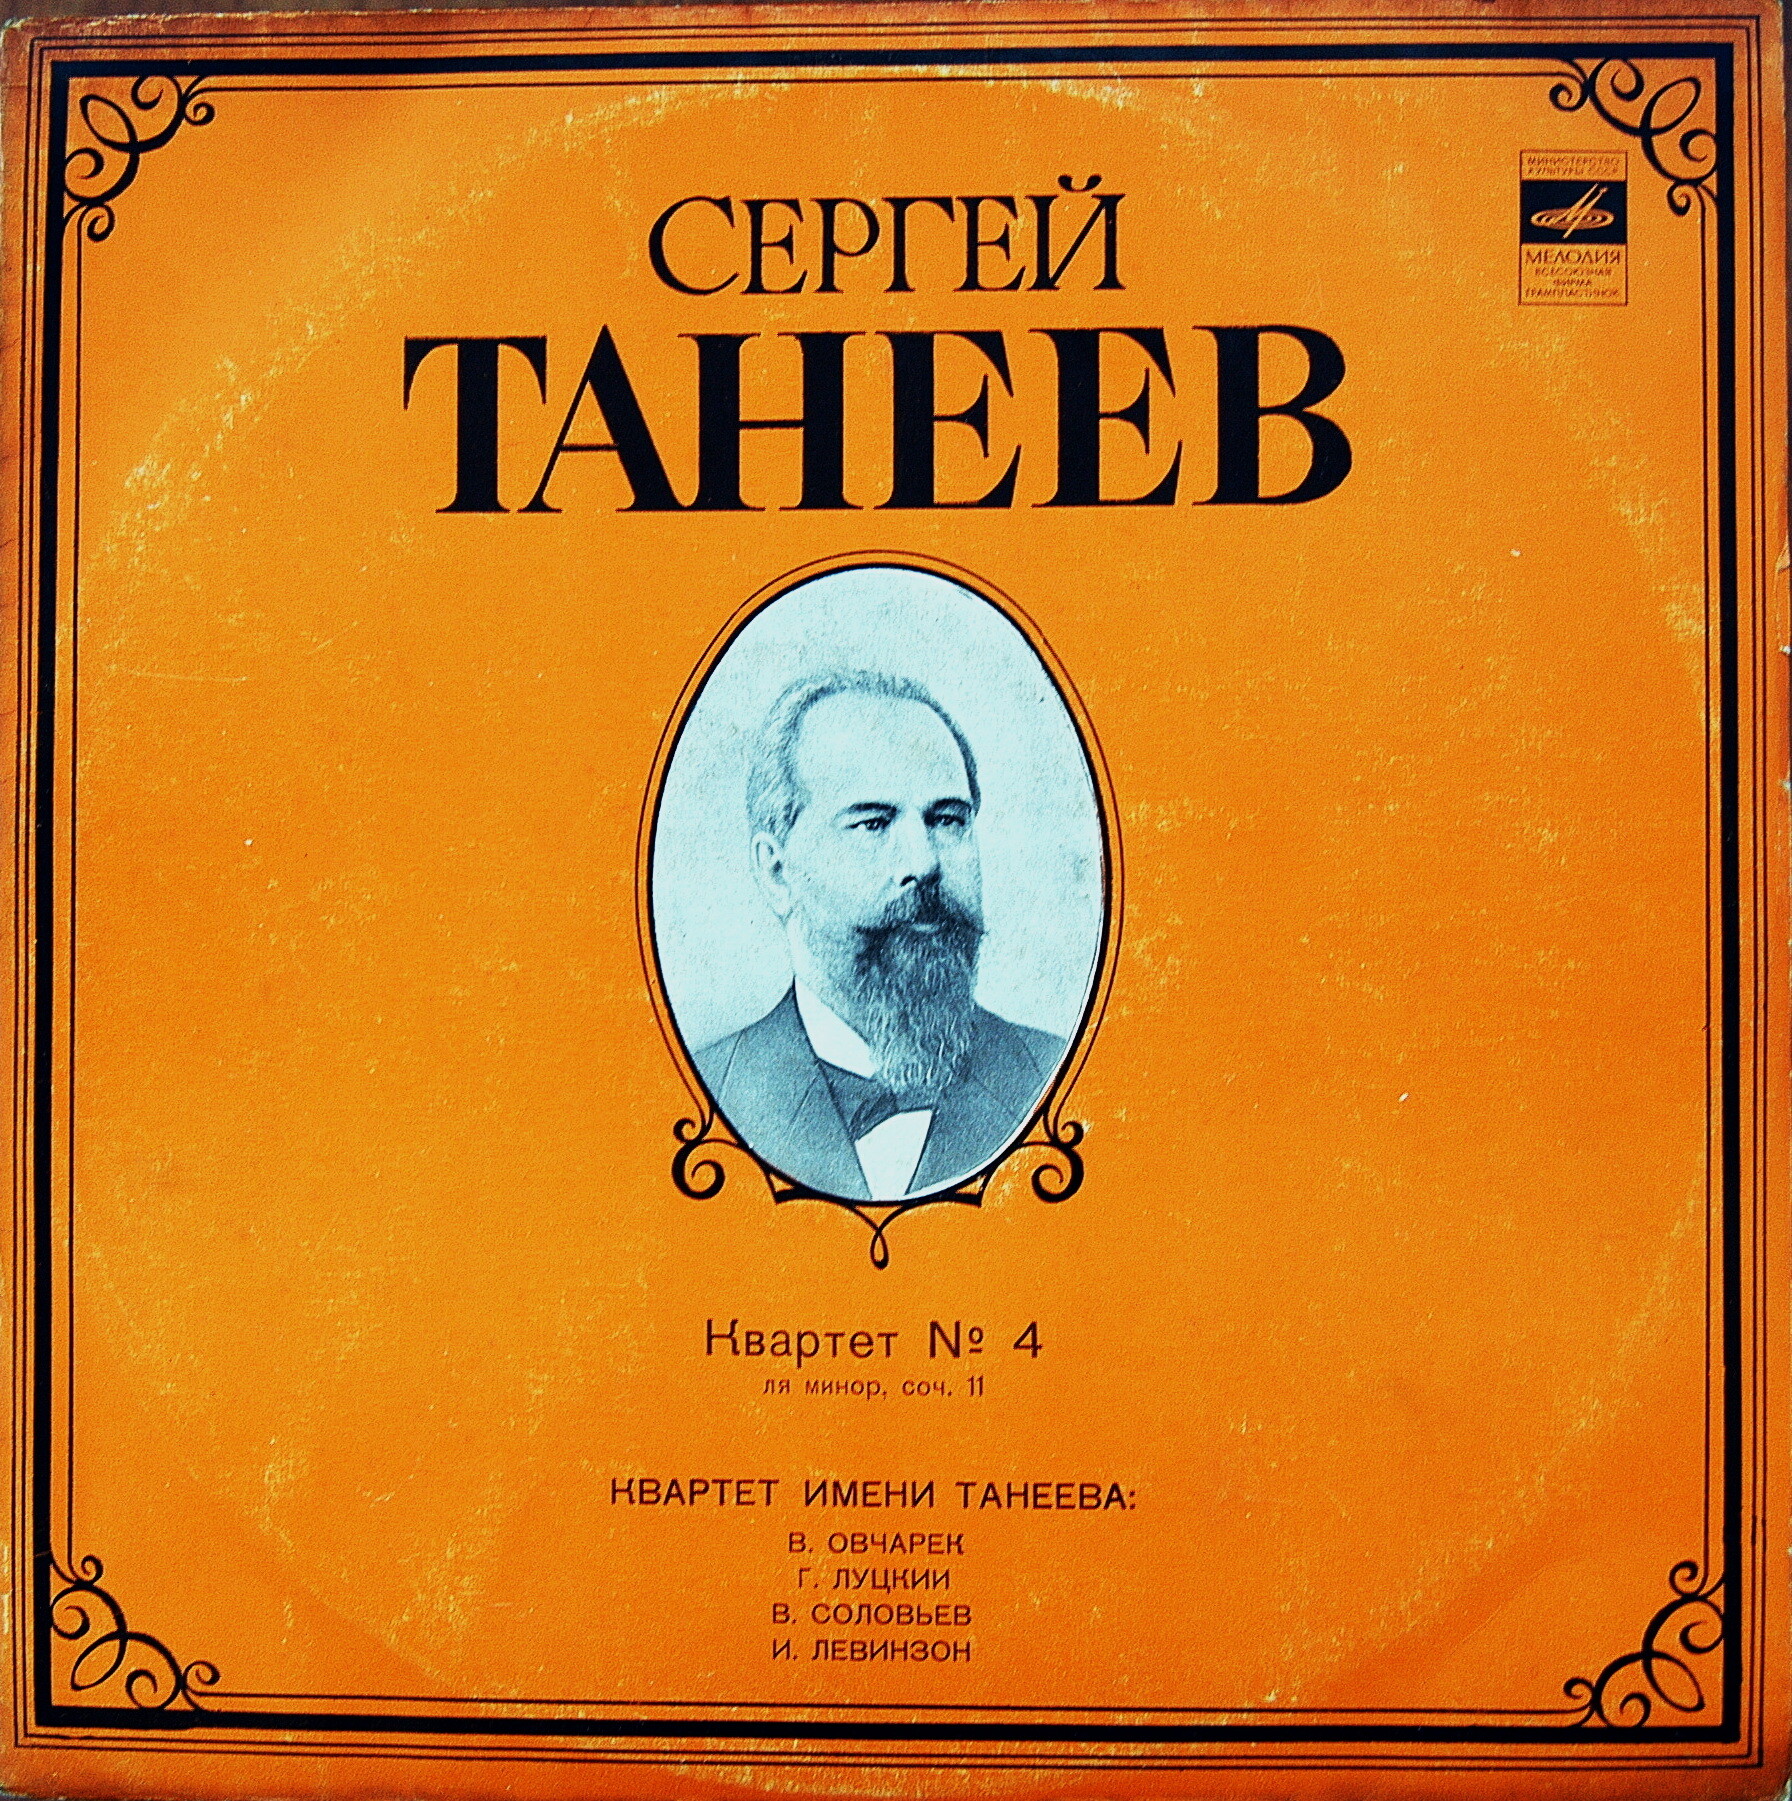 С. ТАНЕЕВ (1856-1915)